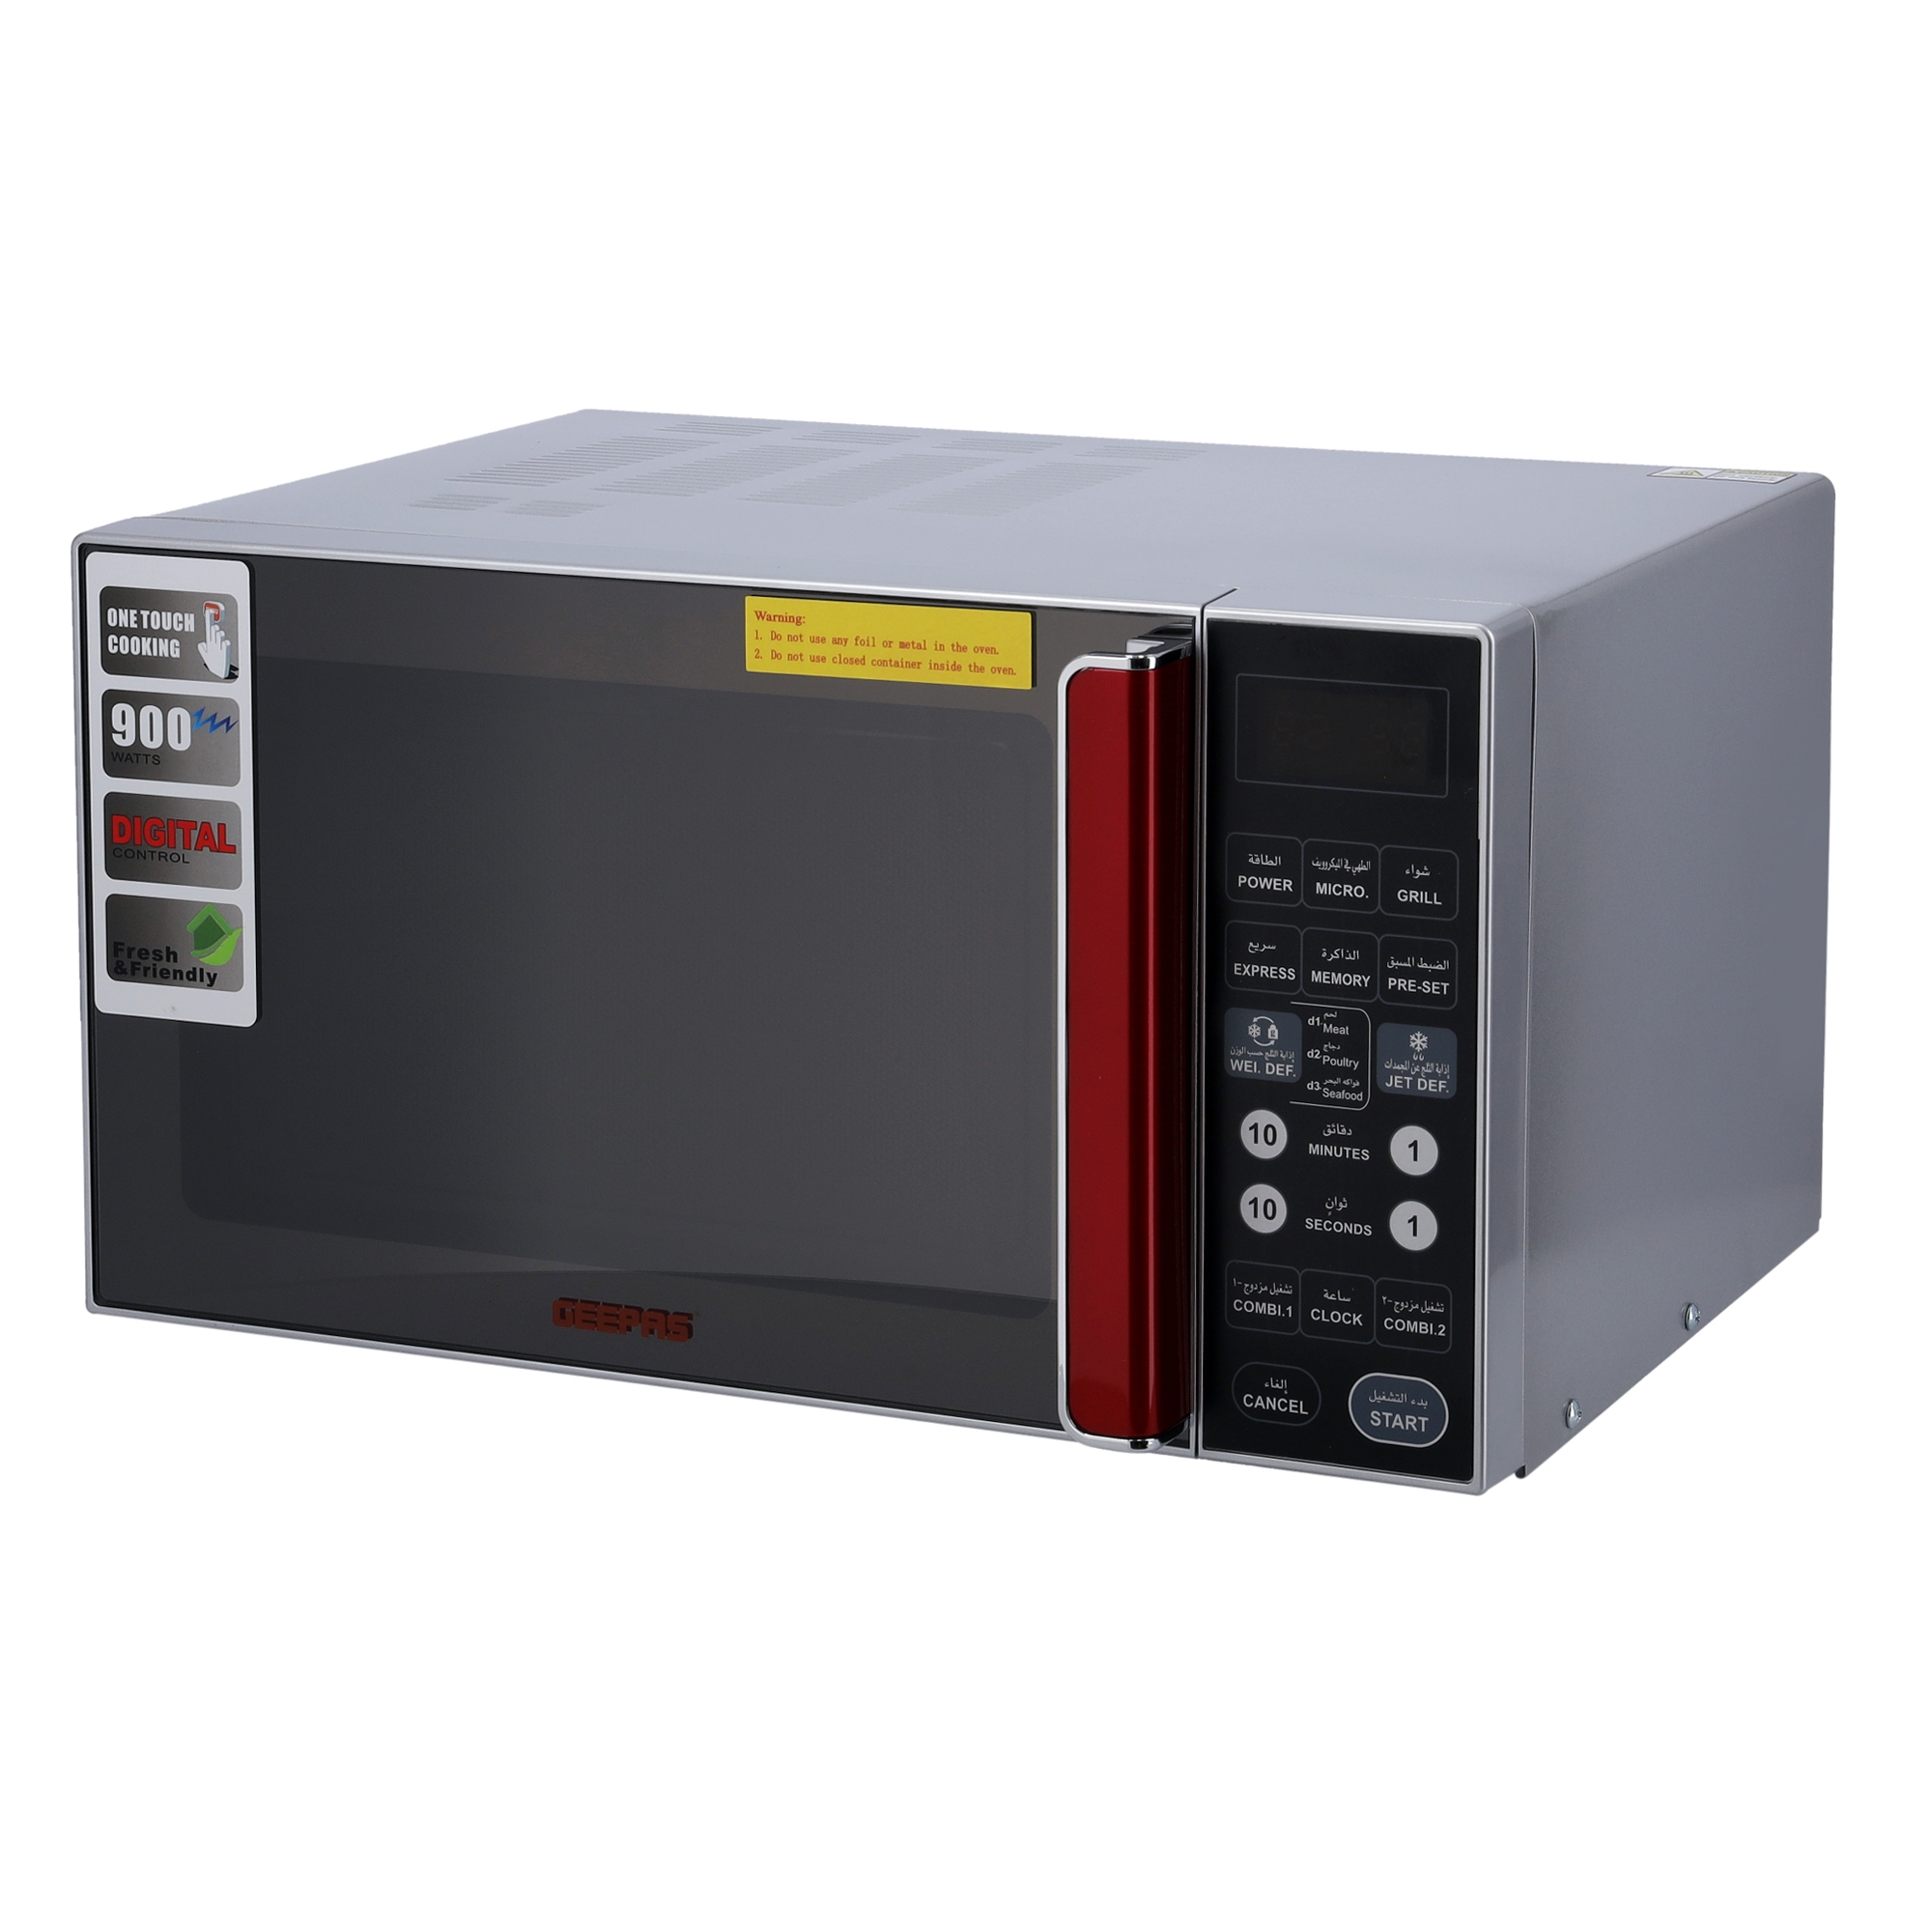 مكروويف Geepas 27L Digital Microwave Oven - 900W